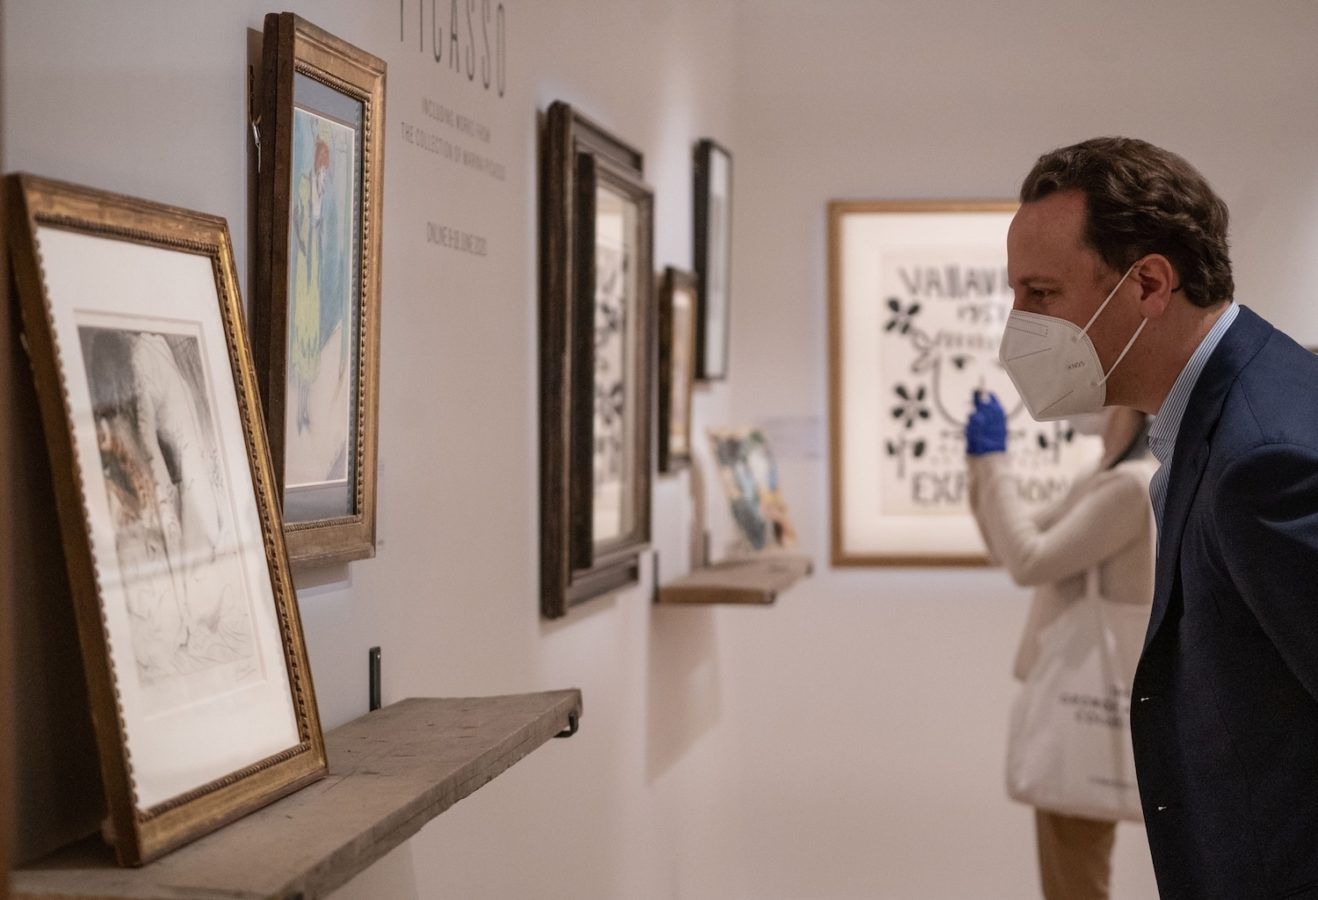 Online Pablo Picasso Auction Raises Nearly £5 million